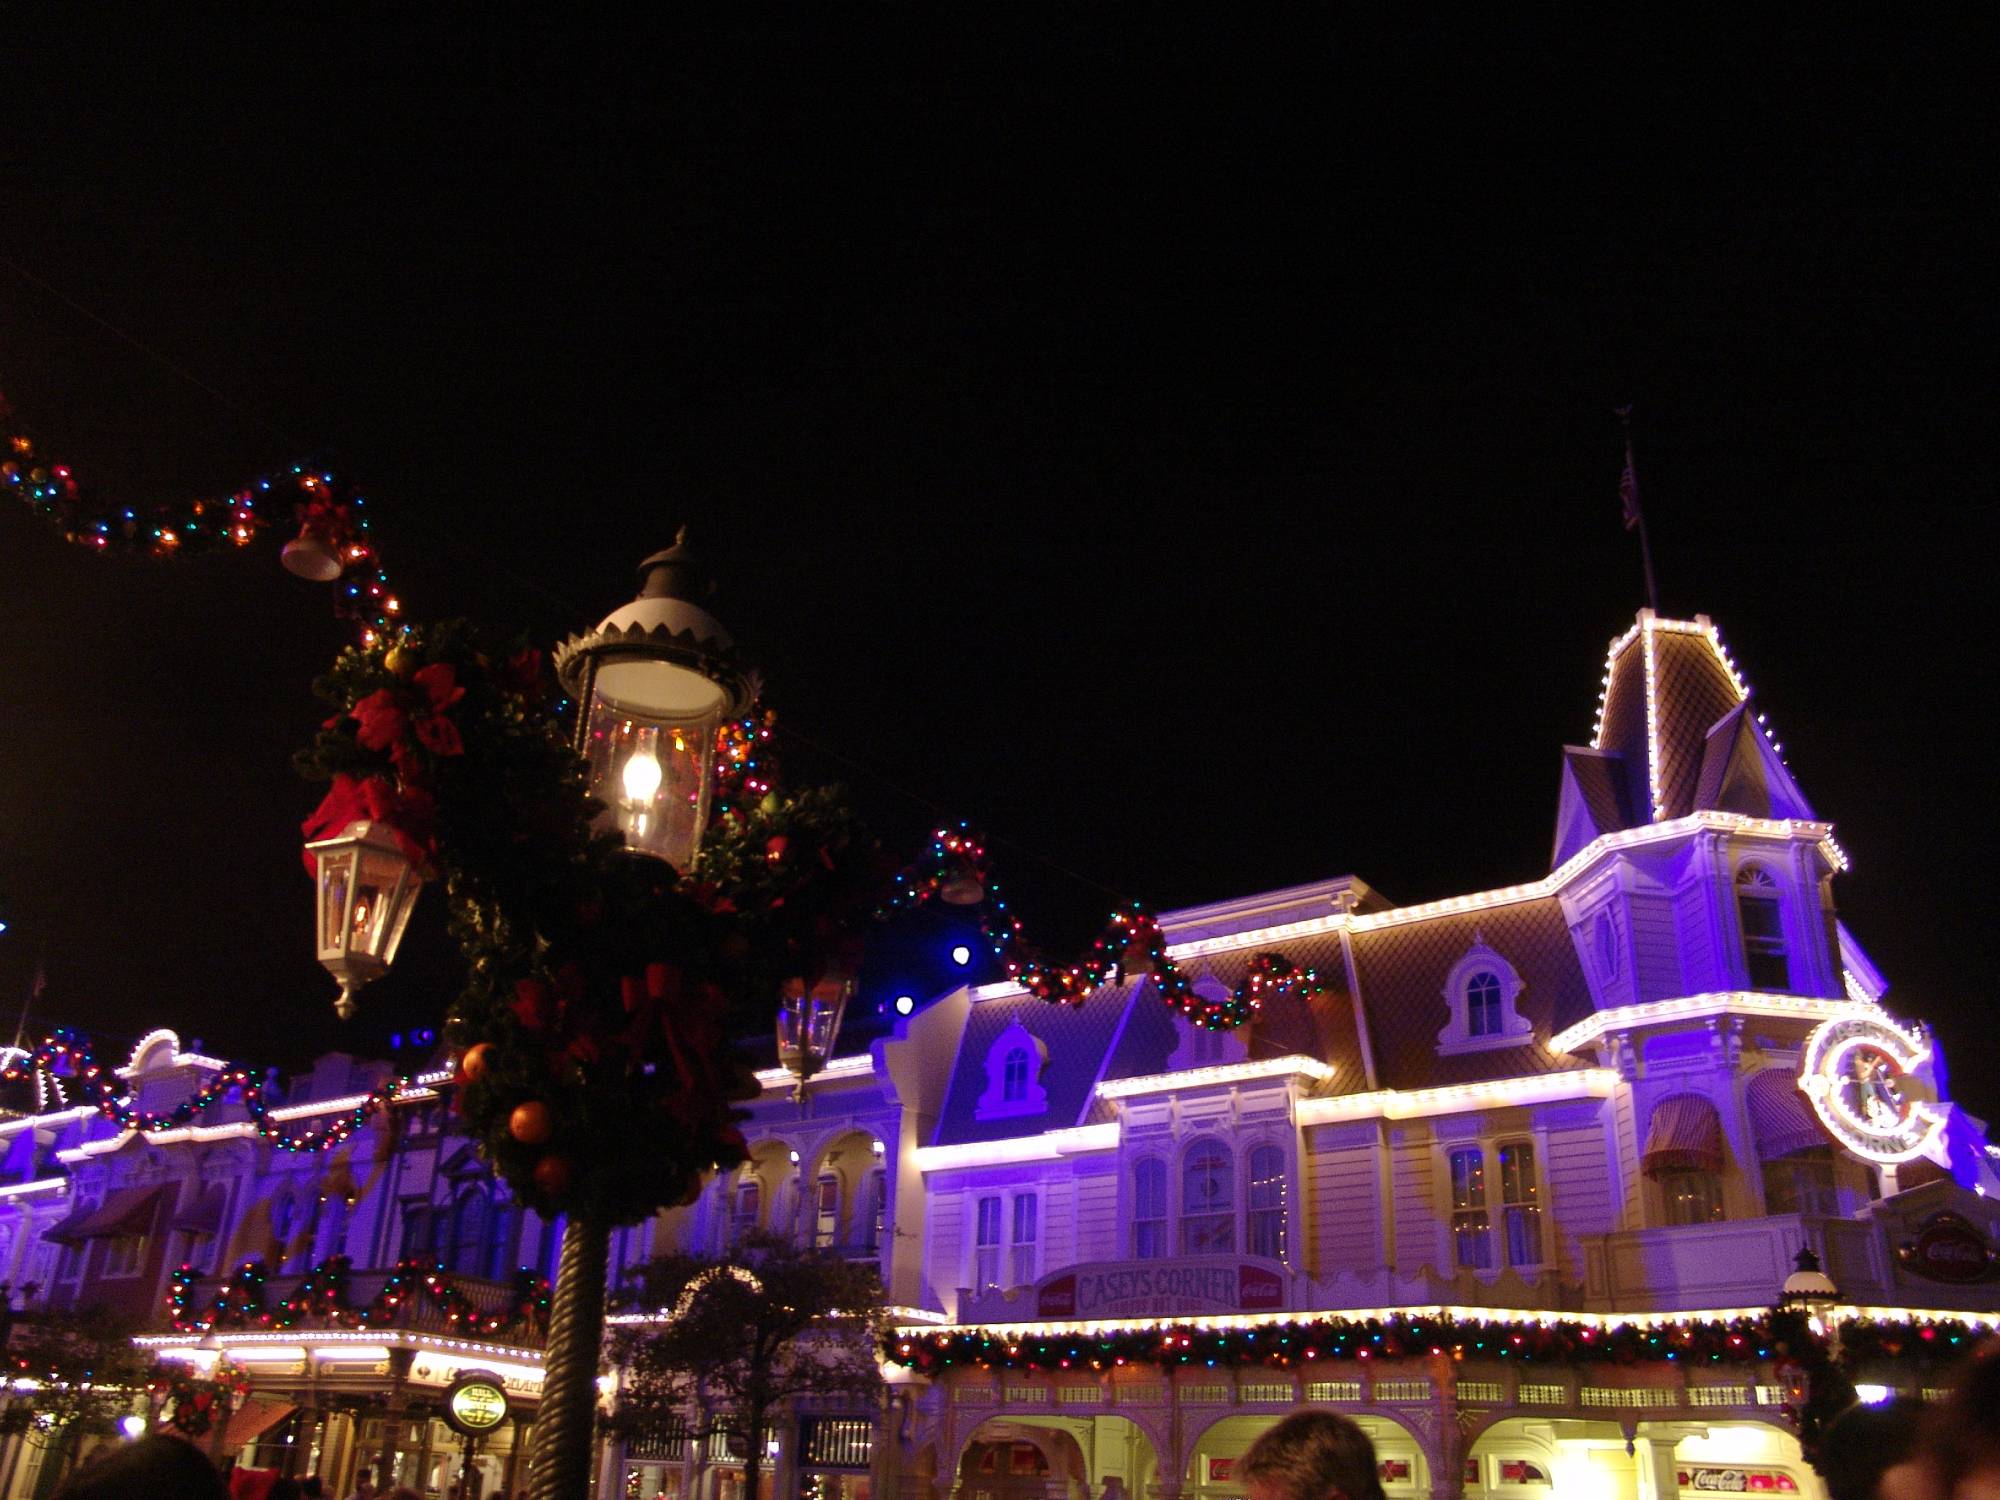 Magic Kingdom - Main Street at night